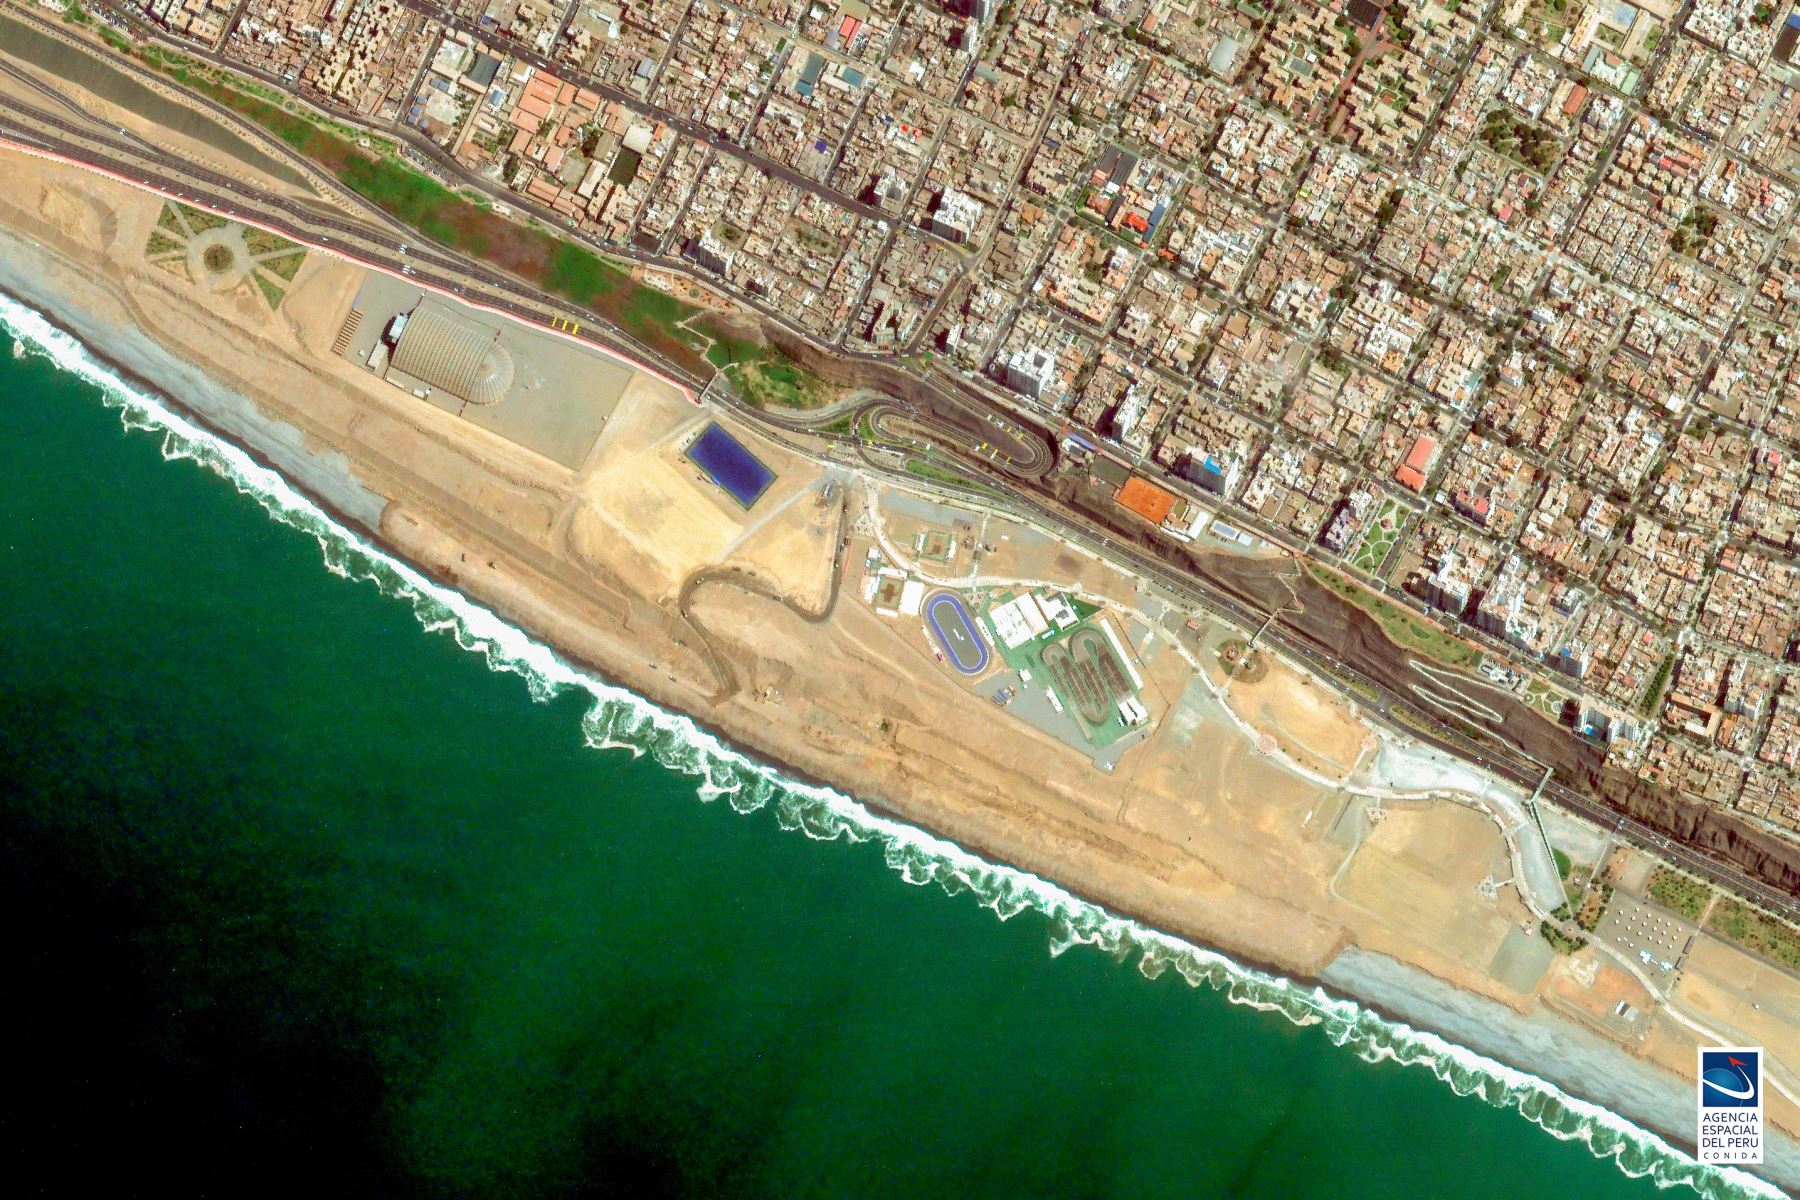 La Costa Verde vista desde el  PeruSat-1, el satélite de observación terrestre de propiedad del gobierno peruano. Foto: ANDINA/Conida